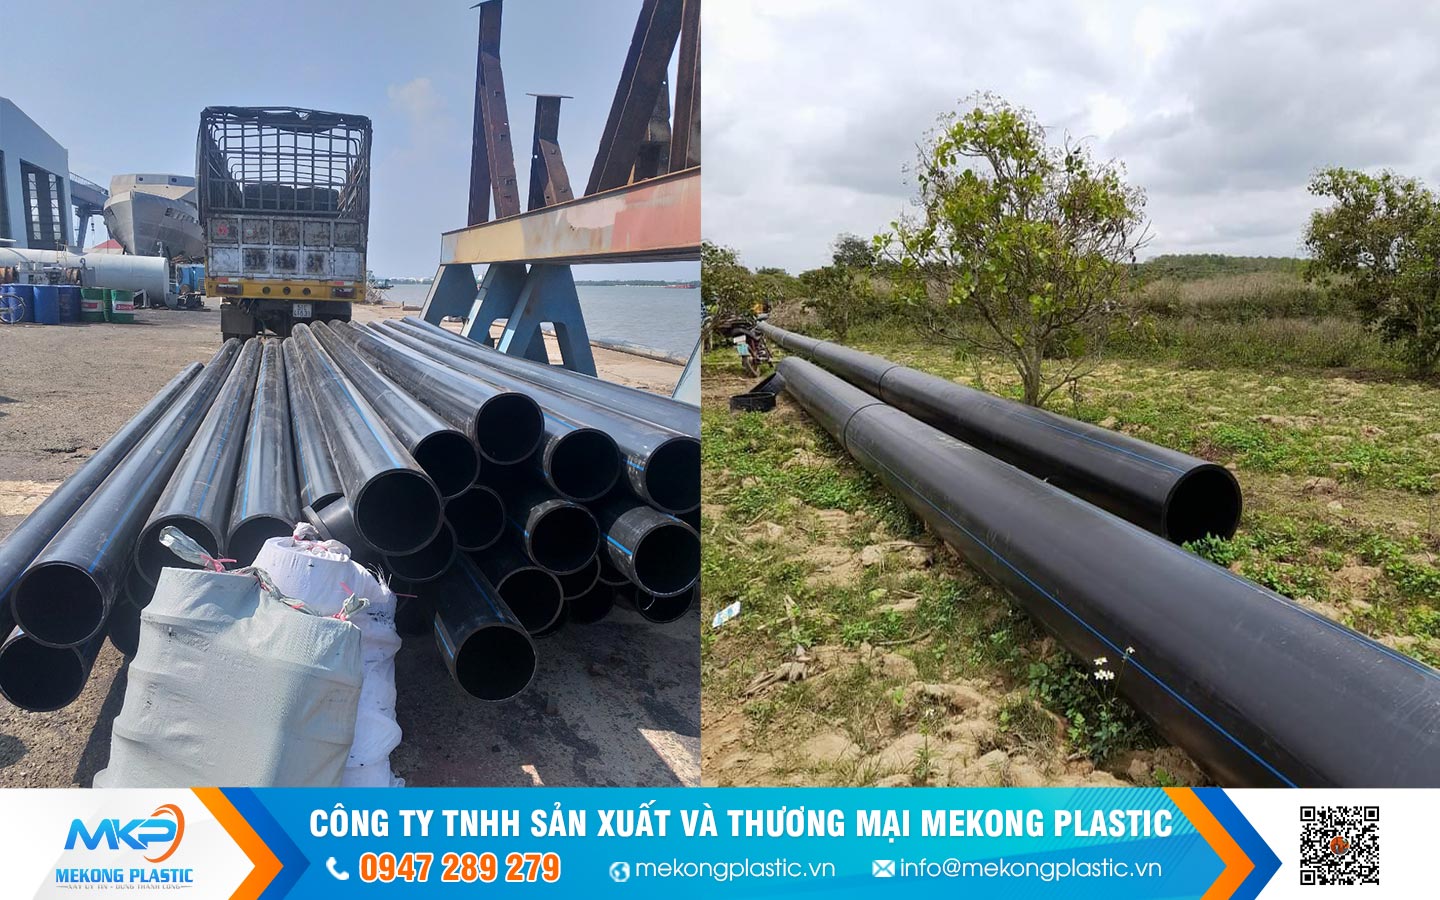 Cách lựa chọn ống nhựa HDPE phù hợp mục đích sử dụngỐng Nhựa HDPE Mekong Plastic Dành Cho Hệ Thống Tưới Và Cấp Thoát Nước